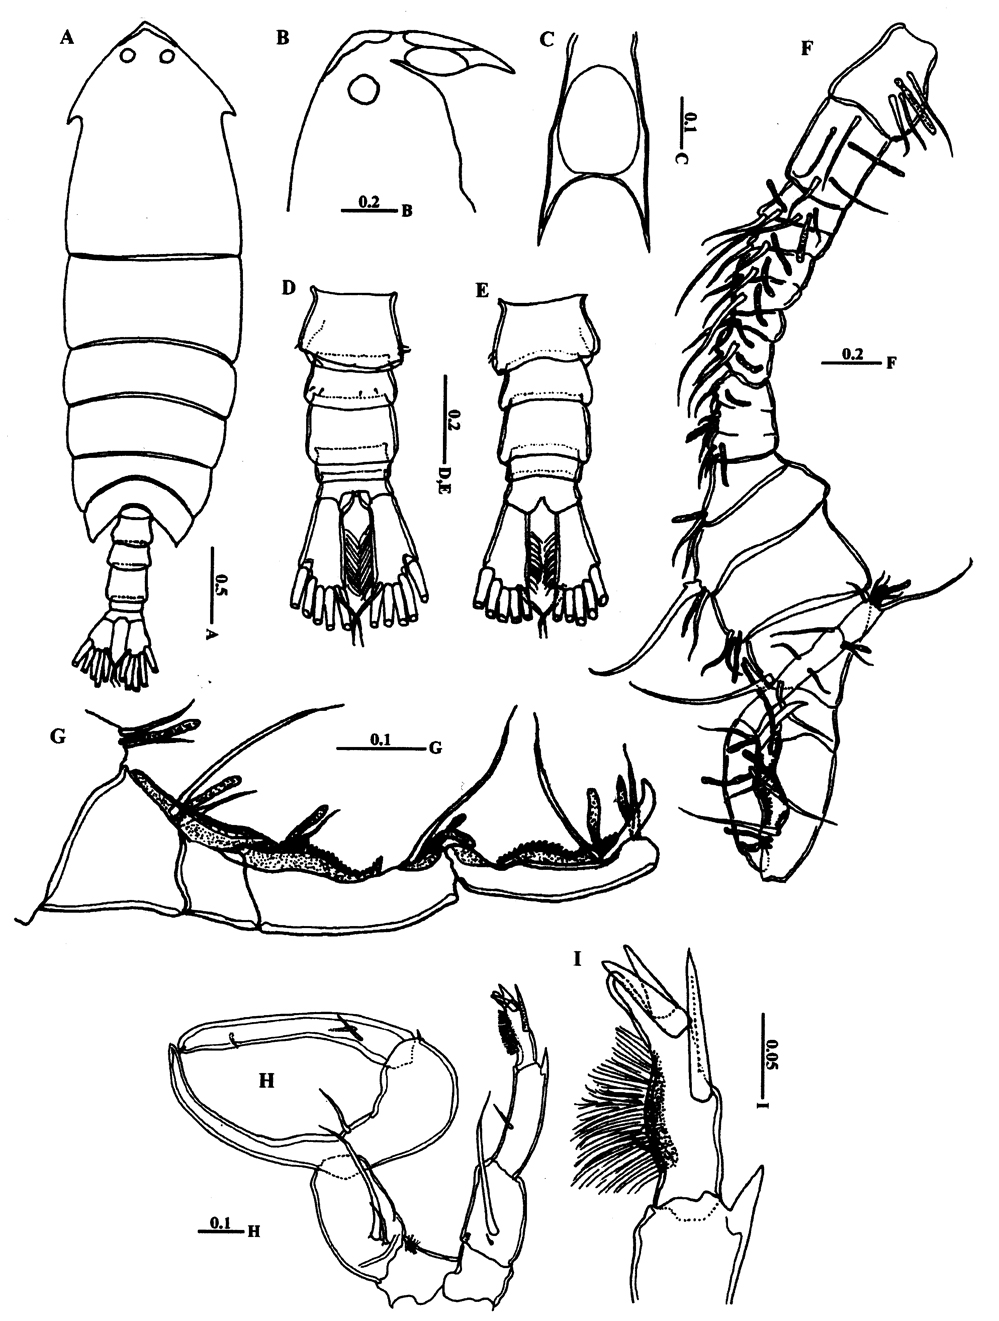 Espèce Pontella karachiensis - Planche 5 de figures morphologiques